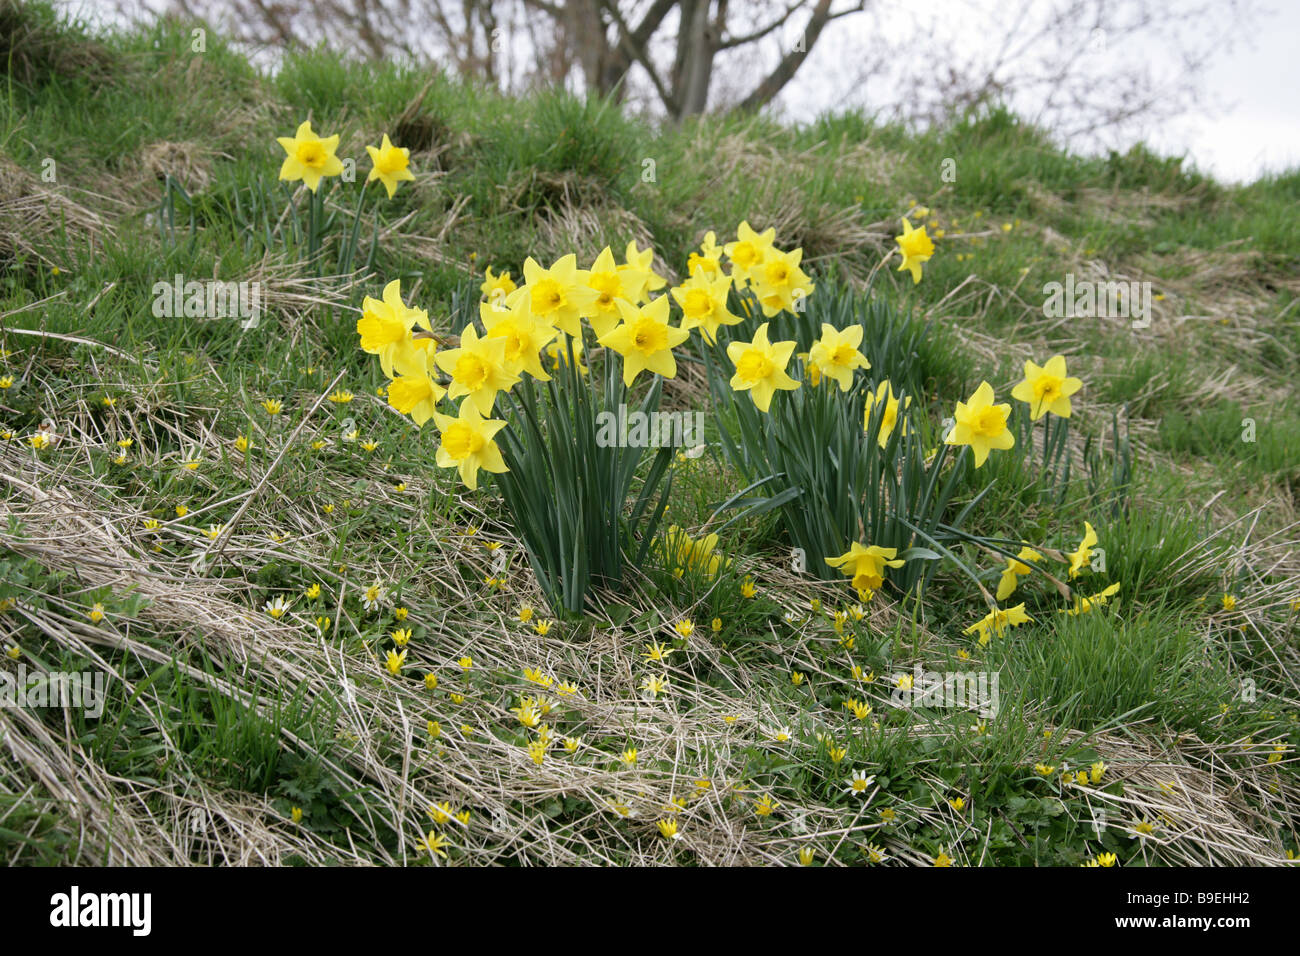 Wilde Narzissen und kleinen Celandines, Ranunculus Ficaria, wachsen auf einem Grassy Bank im März Stockfoto